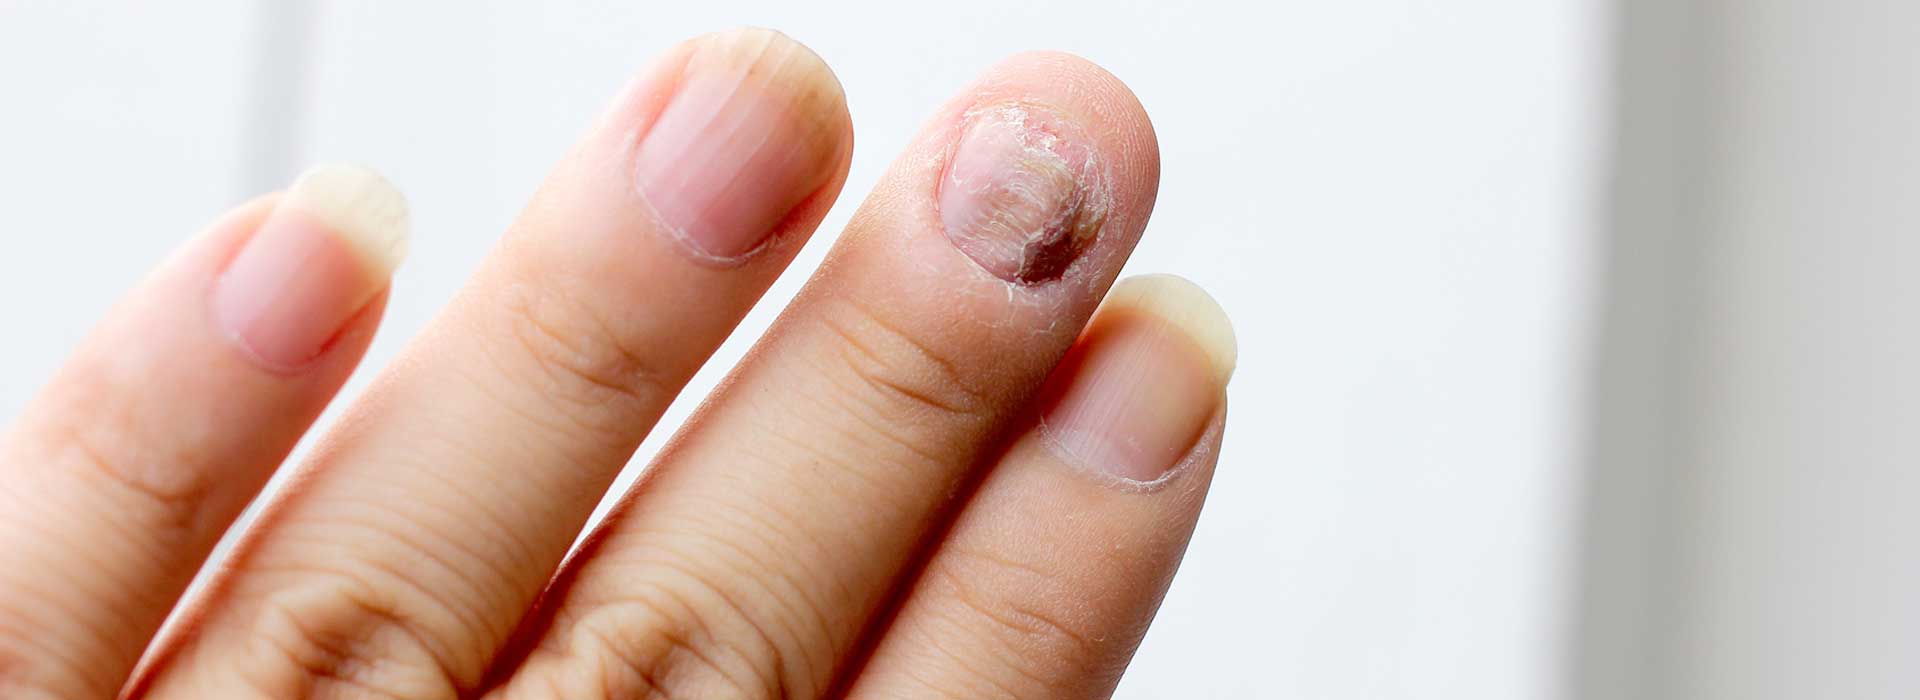 Mycose des ongles : comment s'en débarrasser pour toujours et naturellement